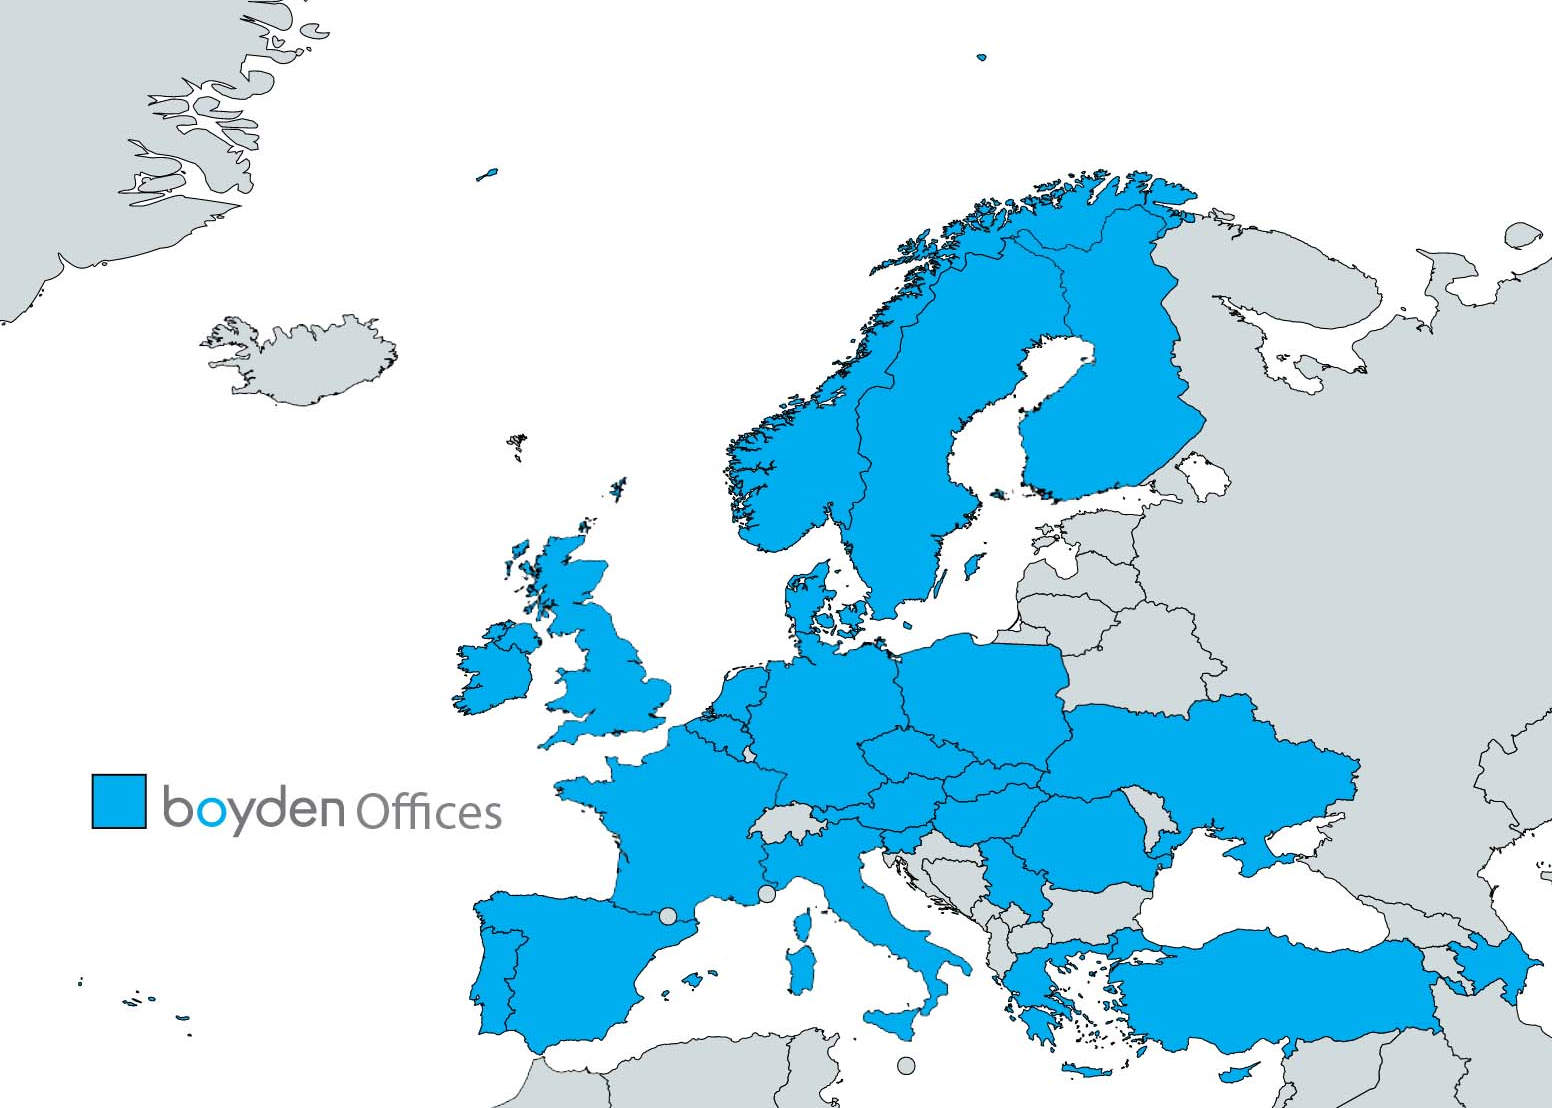 Boyden office based in europe